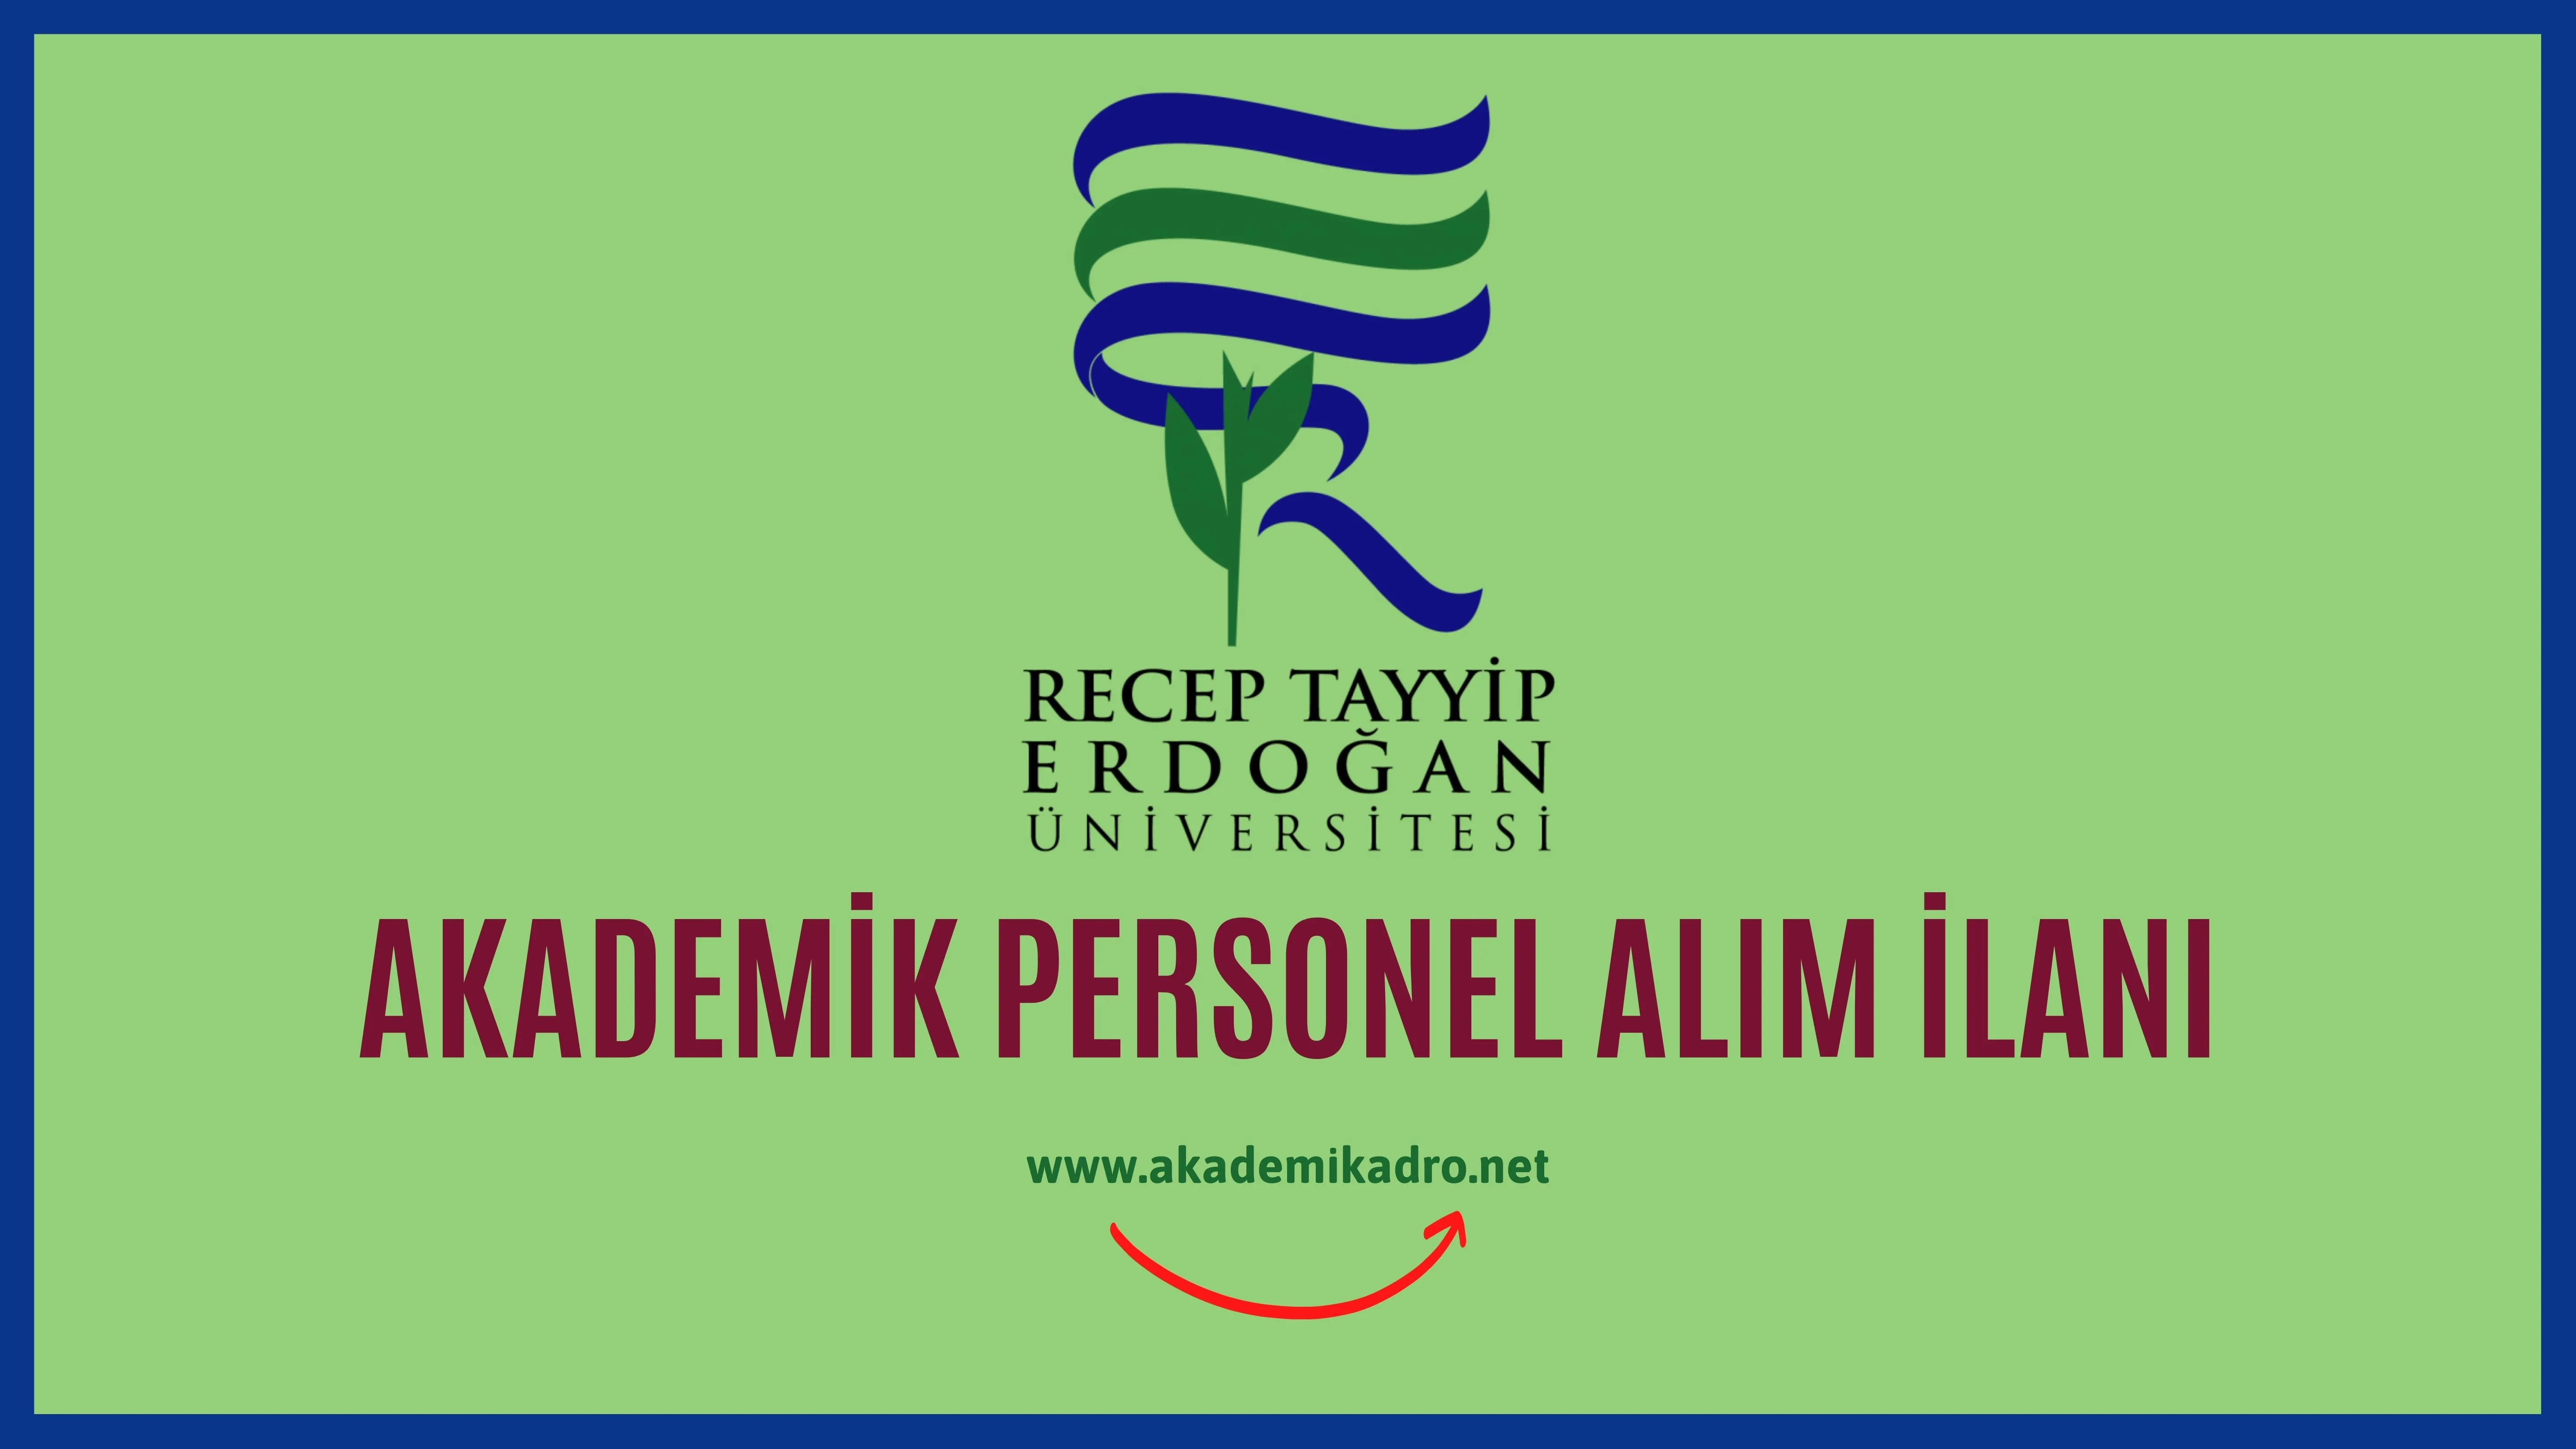 Recep Tayyip Erdoğan Üniversitesi 2 akademik personel alacak.Son başvuru tarihi 09 Eylül 2022.